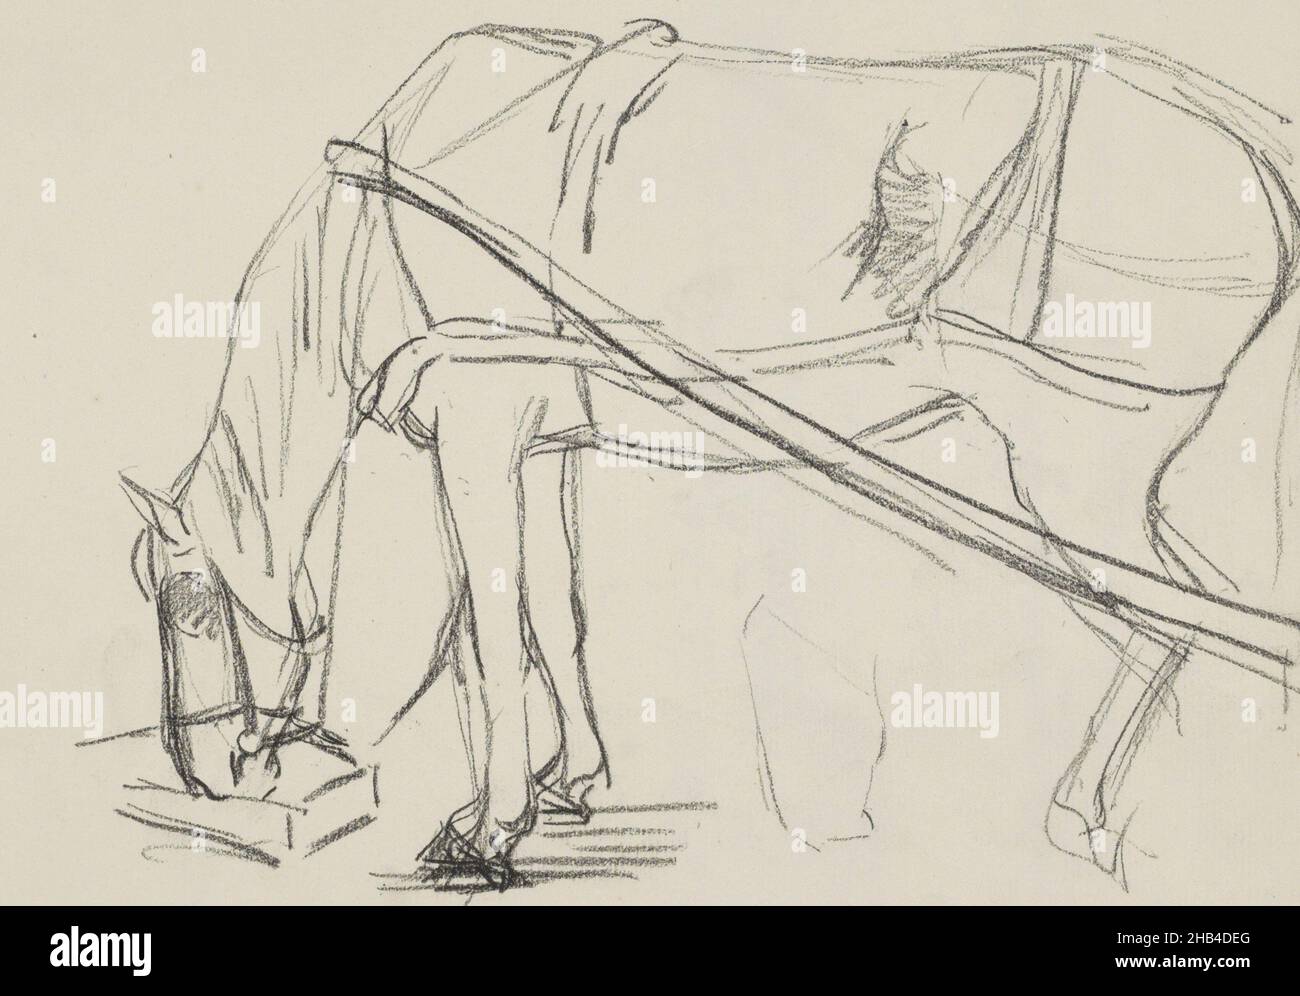 Feuille 7 recto d'un carnet d'esquisses de 27 feuilles, Ébauche de cheval mangeant hors d'un bol, Ferdinand Oldewelt, c.1904 - c.1912 Banque D'Images